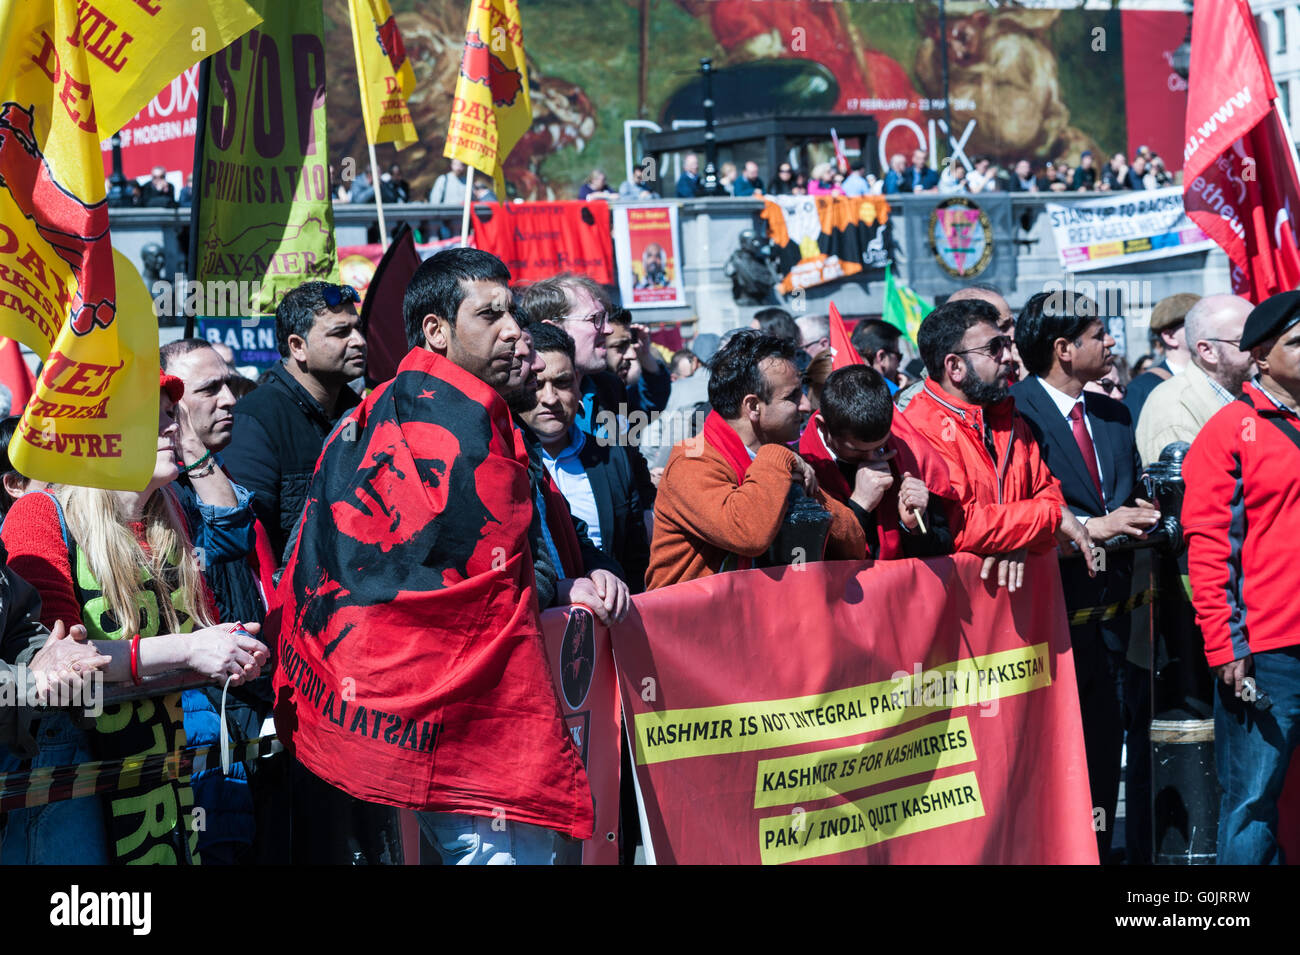 London, UK. 1. Mai 2016. Arbeitnehmer und Gewerkschaften Aktivisten aus Großbritannien und der ganzen Welt versammelten sich auf einer Kundgebung auf dem Trafalgar Square anlässlich der jährlichen May Day, auch bekannt als Tag der Arbeit. Gewerkschafter und Aktivisten forderten ein Ende der Sparpolitik, das Eintreten für Menschenrechte und internationale Solidarität im Kampf für die Rechte der Gewerkschaften. Wiktor Szymanowicz/Alamy Live-Nachrichten Stockfoto